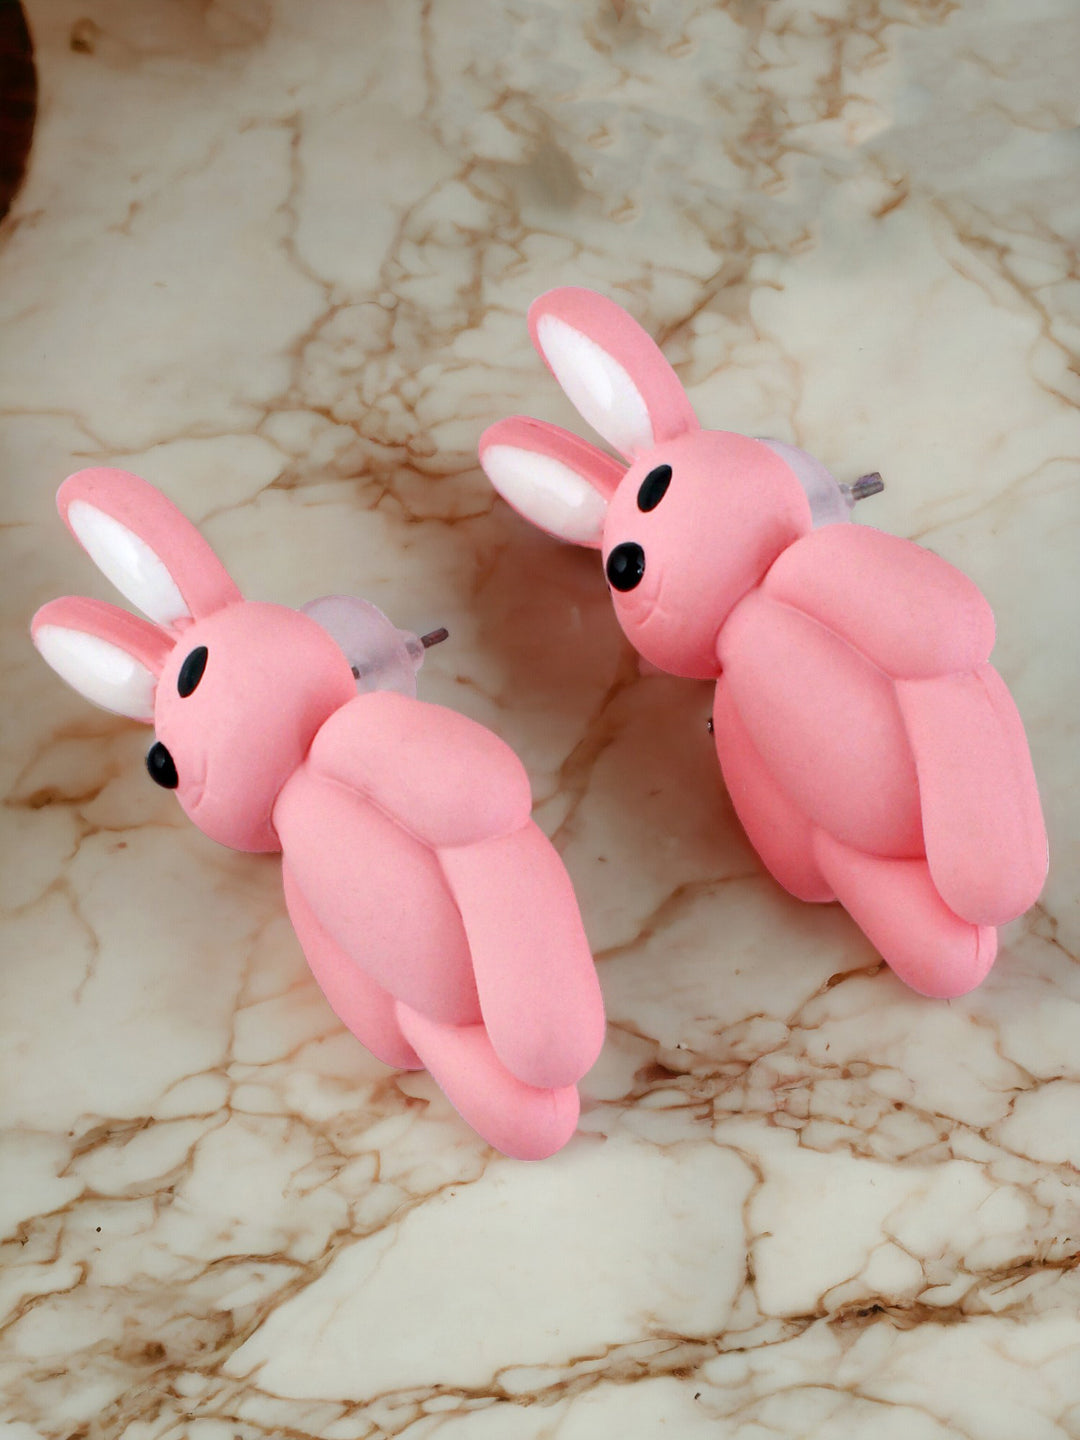 Lucky Jewellery Pink Color Rabbit Shaped Teddy Stud Earring |Cute Cartoon Earrings For Girls & Women